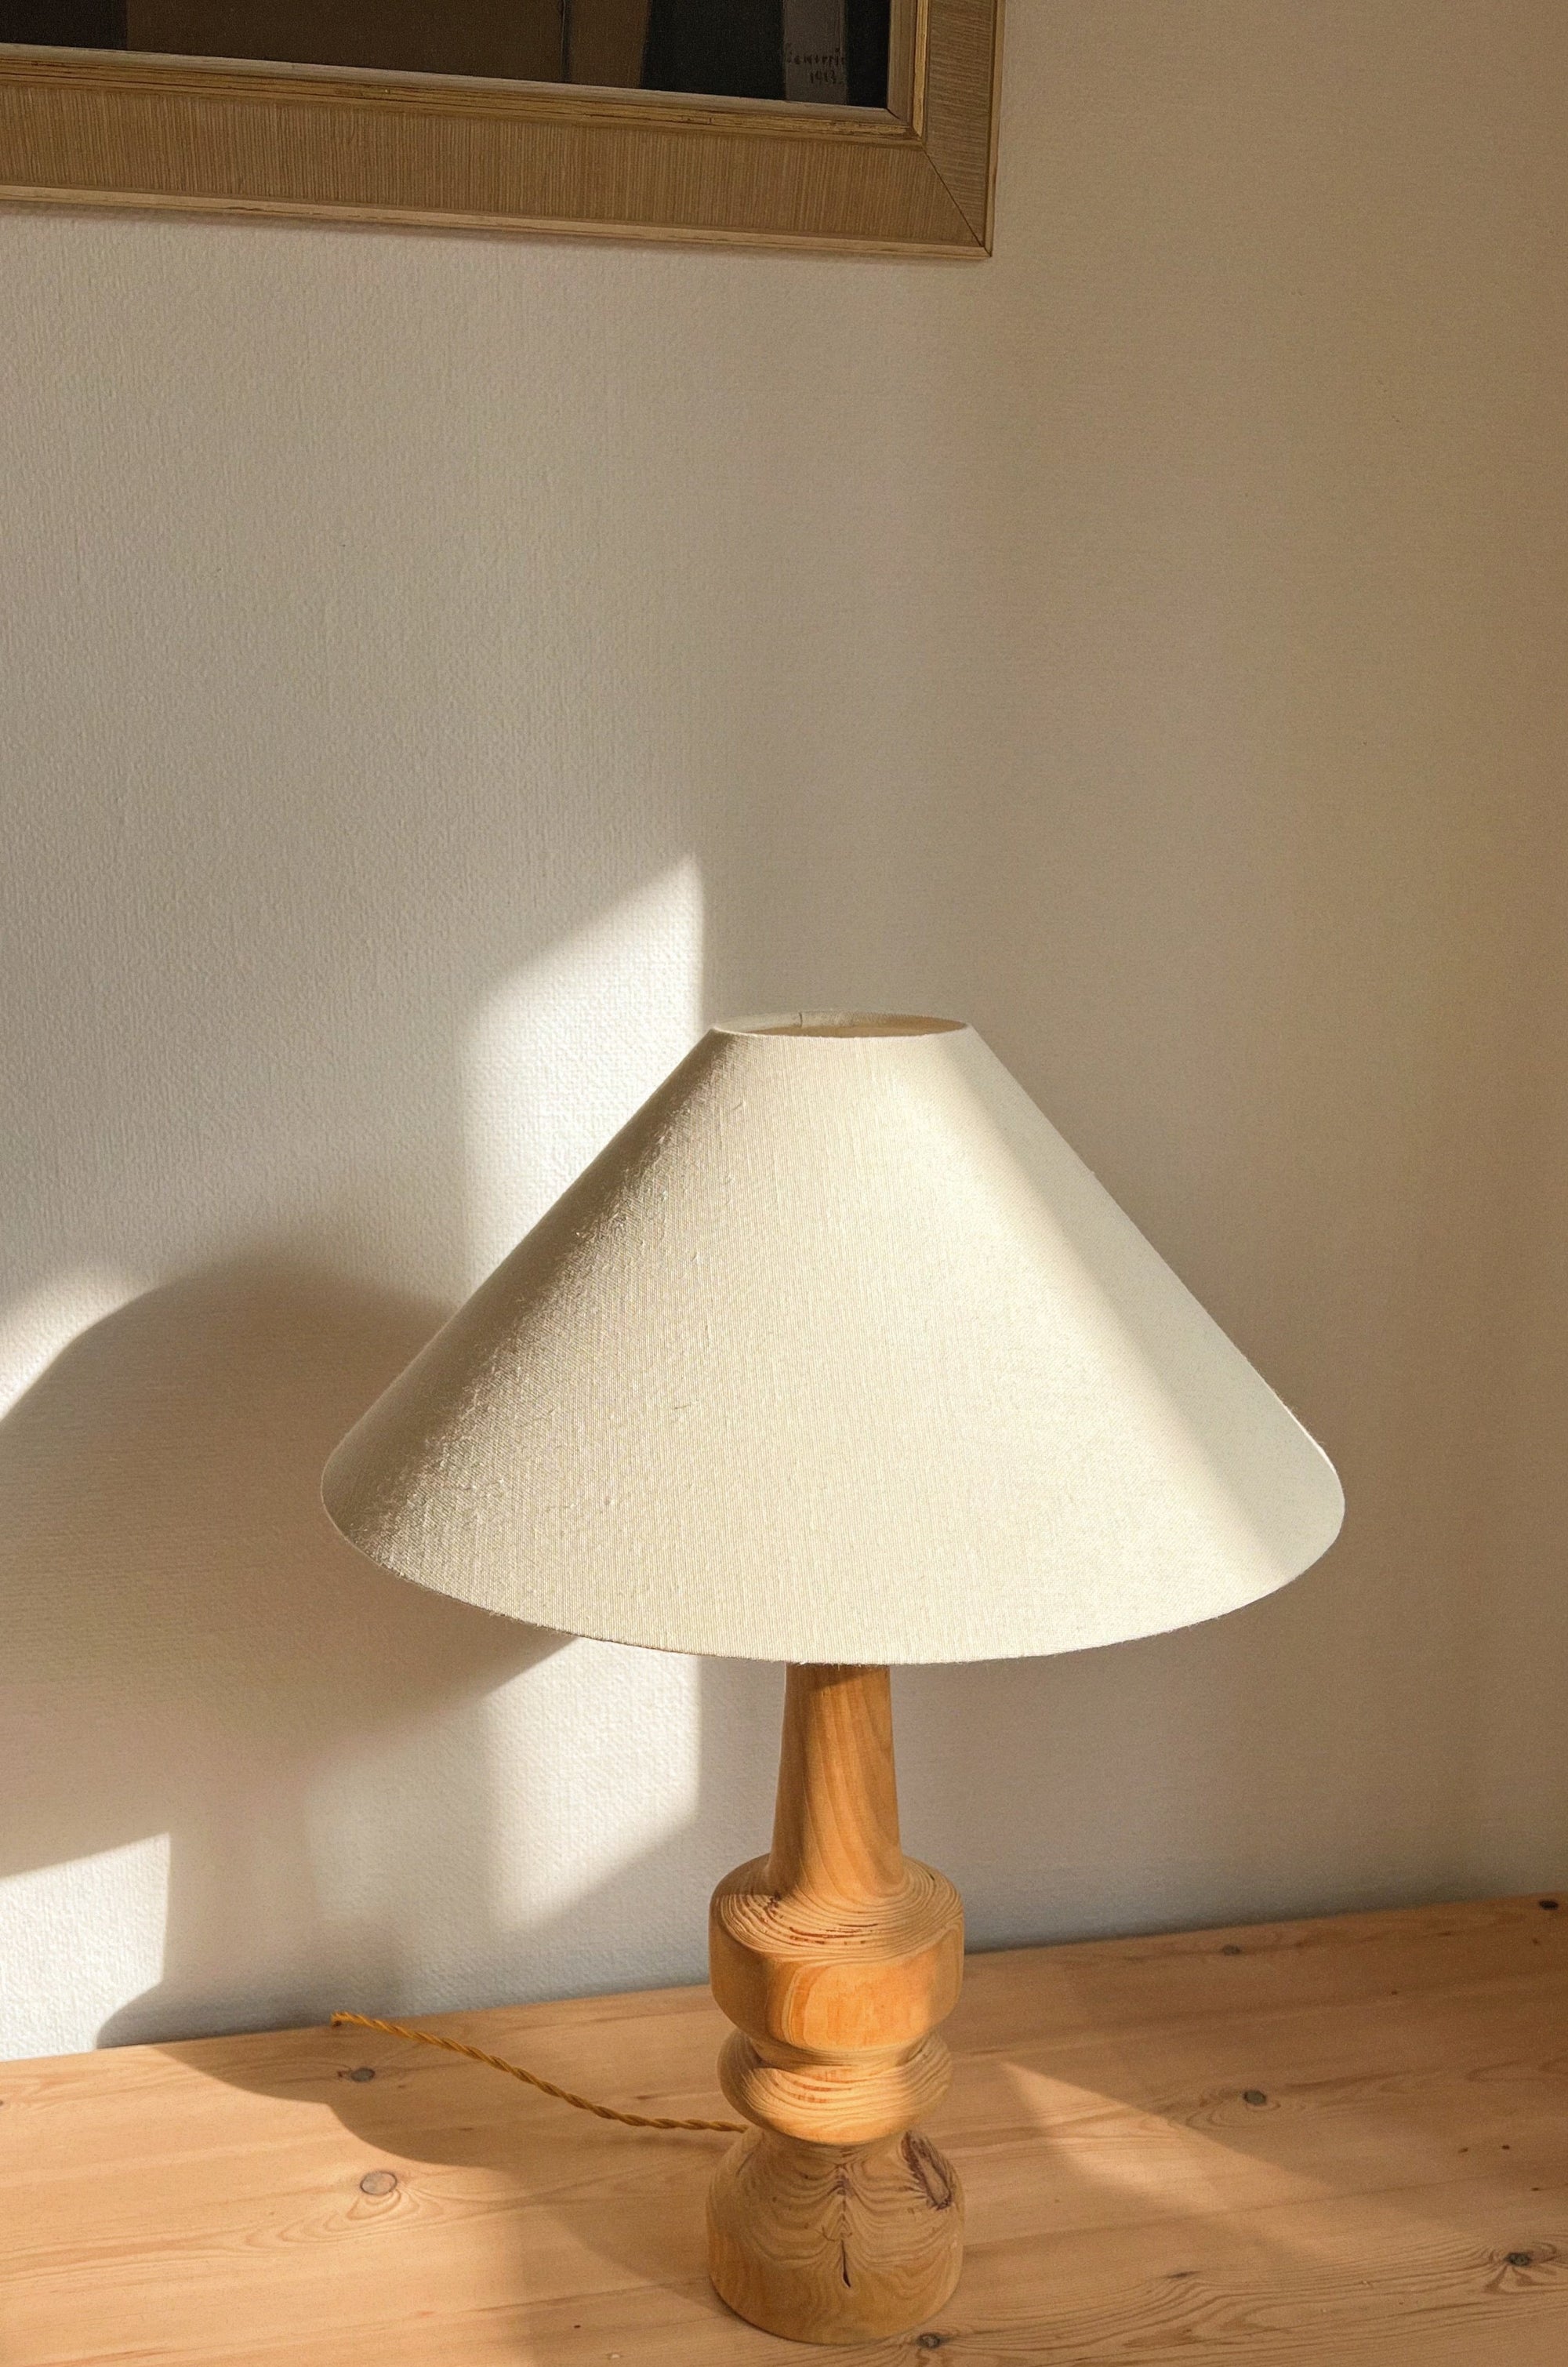 Pine wood Lamp